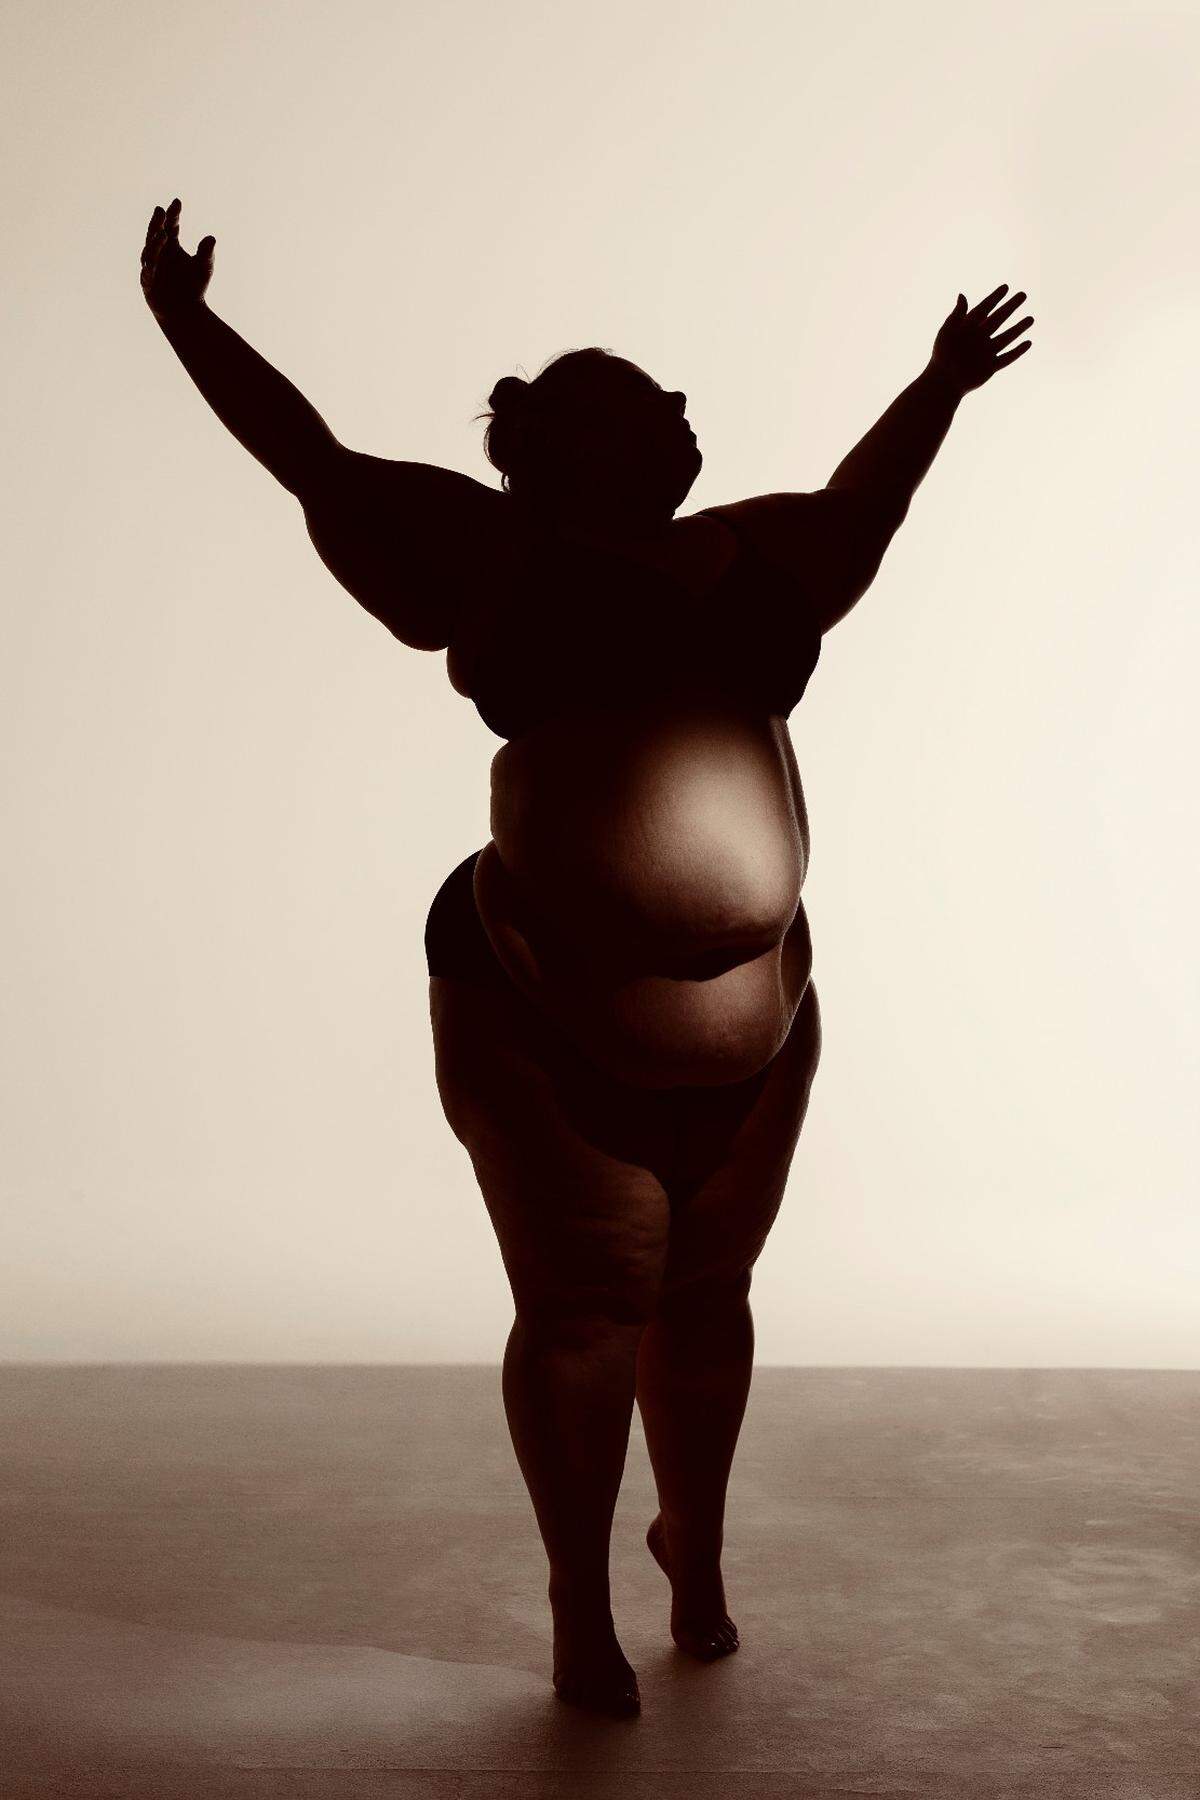 Entstanden ist dieses Bild in Zusammenarbeit mit "Body Home Fat Dance", einer Tanzgruppe, die sich für dicke Menschen einsetzt und zu freudiger Bewegung und Körperverbundenheit anregen will. Das Projekt feiert das Wackeln, die Wellen, die Falten, die Masse und die Weichheit von Körpern. Gewonnen hat das Bild des Fotografenduos Leah Nash and Chris Onstott in der Kategorie "The Human Body".